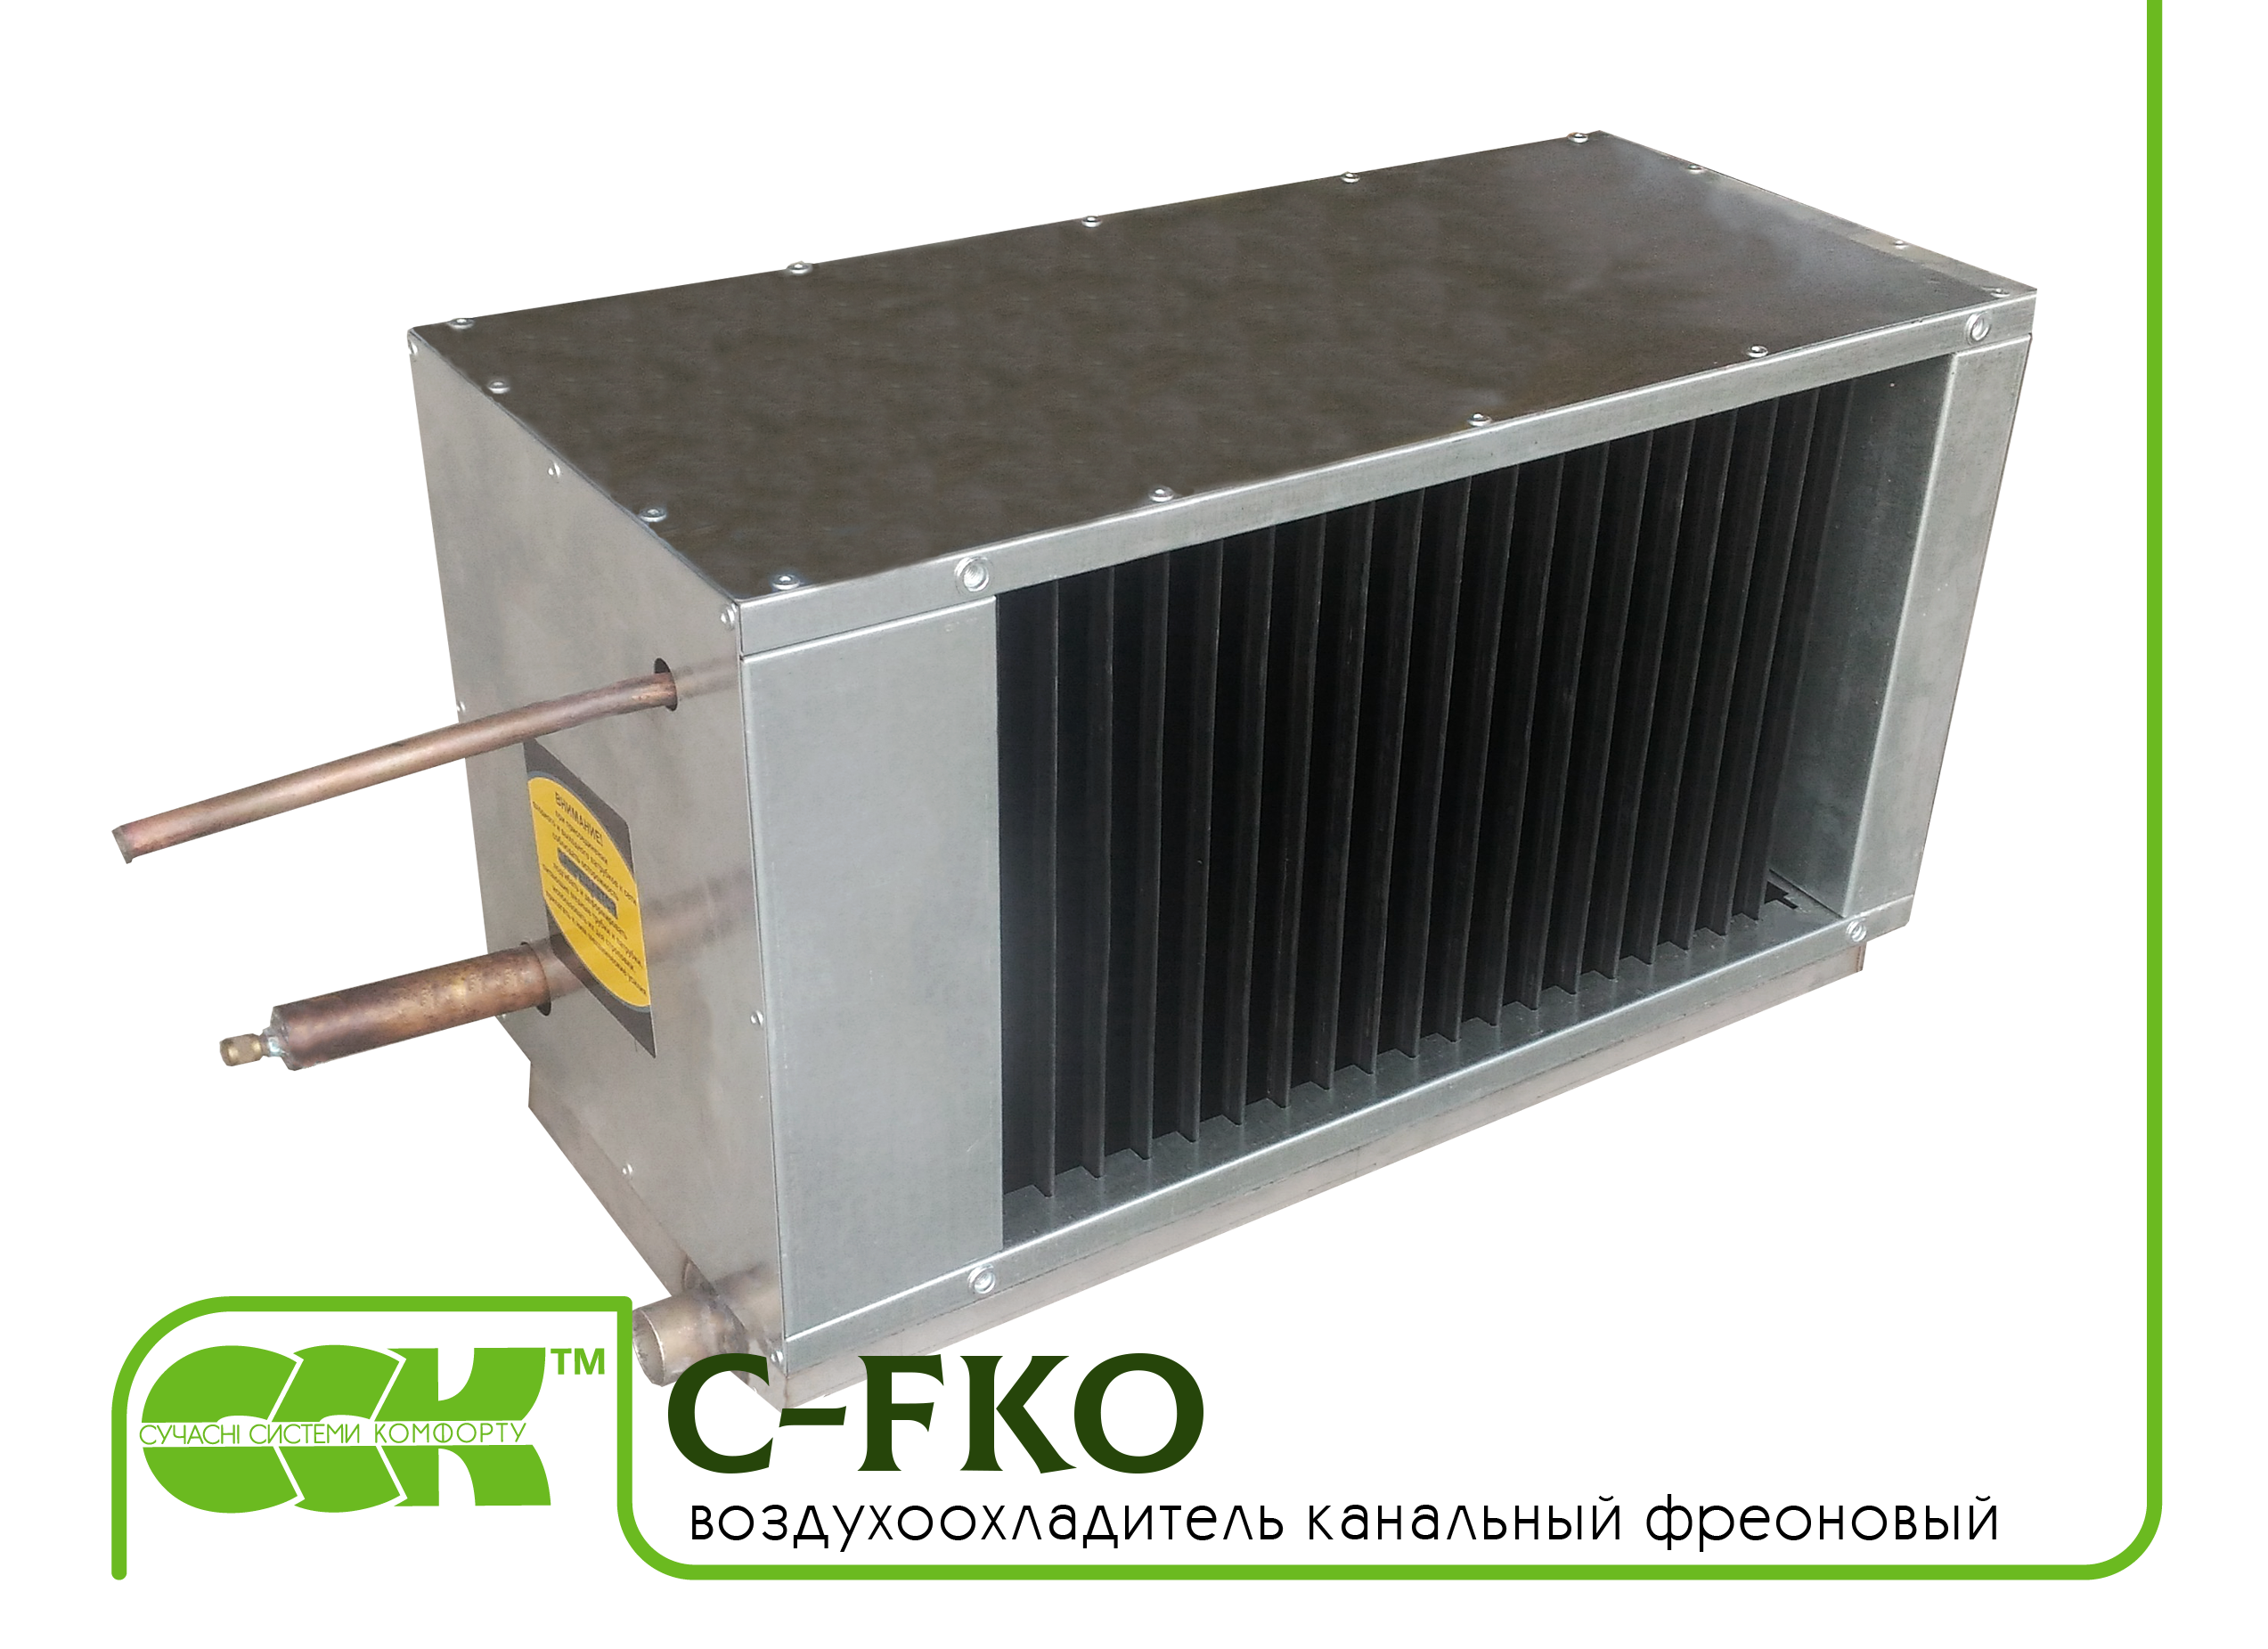 Фреоновый воздухоохладитель канальный C-FKO-90-50